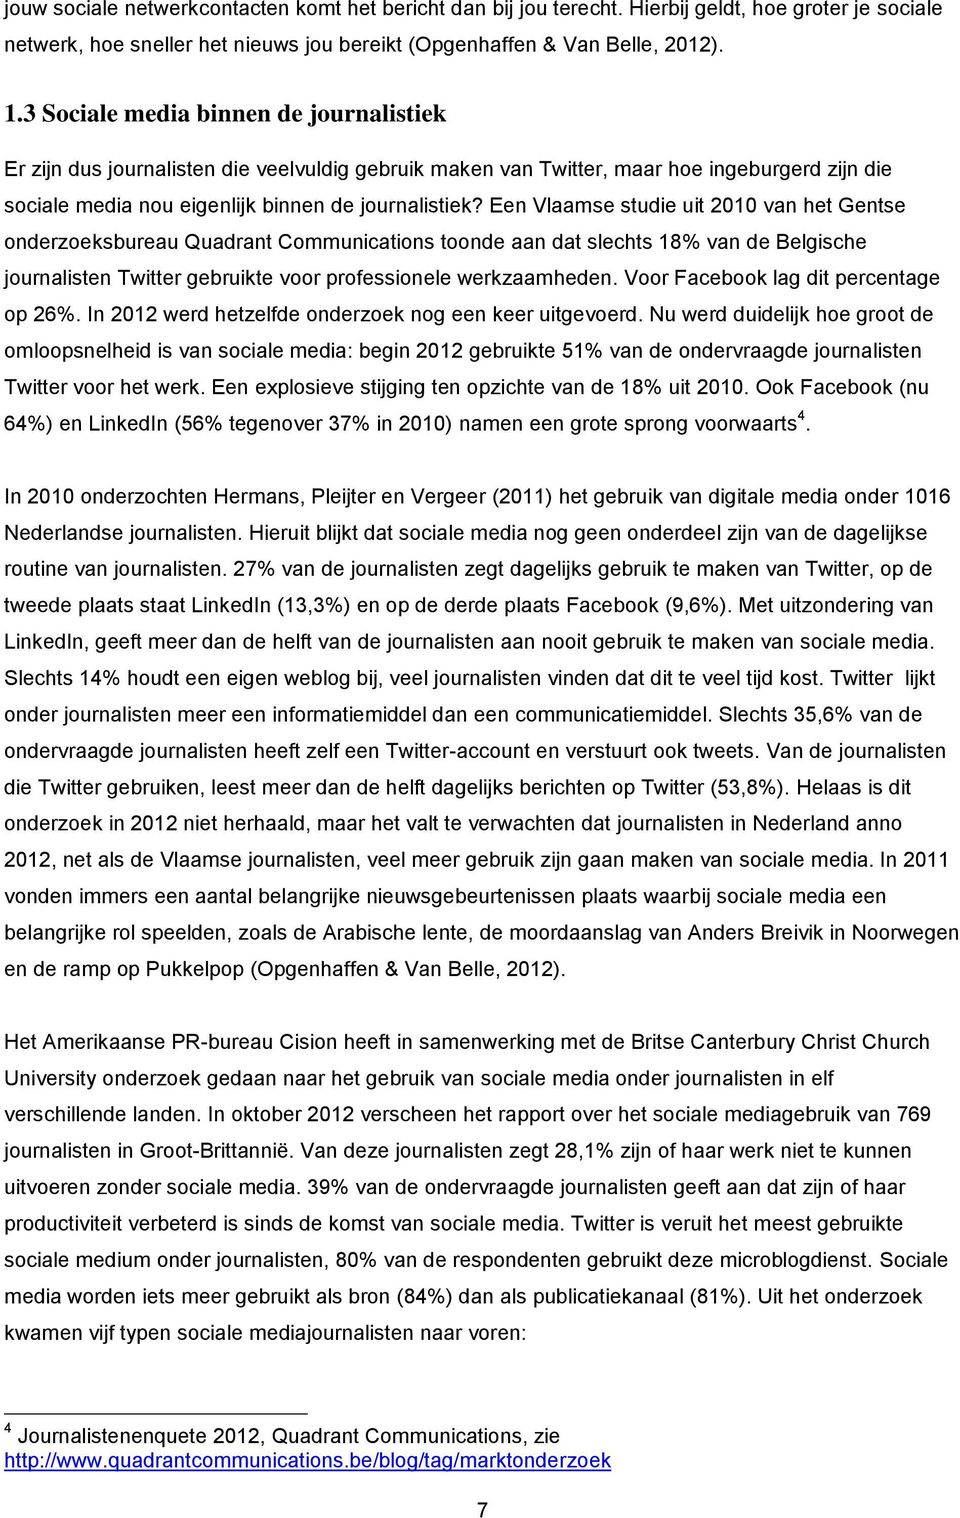 Een Vlaamse studie uit 2010 van het Gentse onderzoeksbureau Quadrant Communications toonde aan dat slechts 18% van de Belgische journalisten Twitter gebruikte voor professionele werkzaamheden.